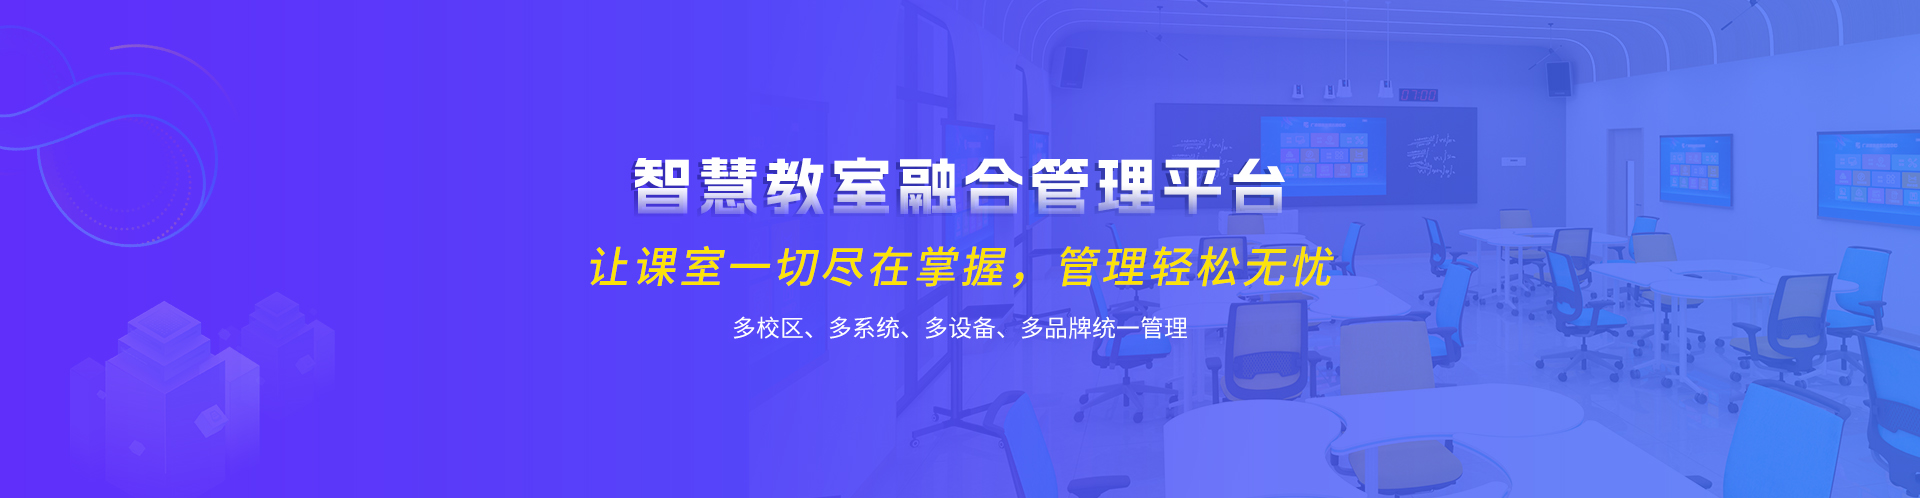 关于当前产品18bet官网·(中国)官方网站的成功案例等相关图片